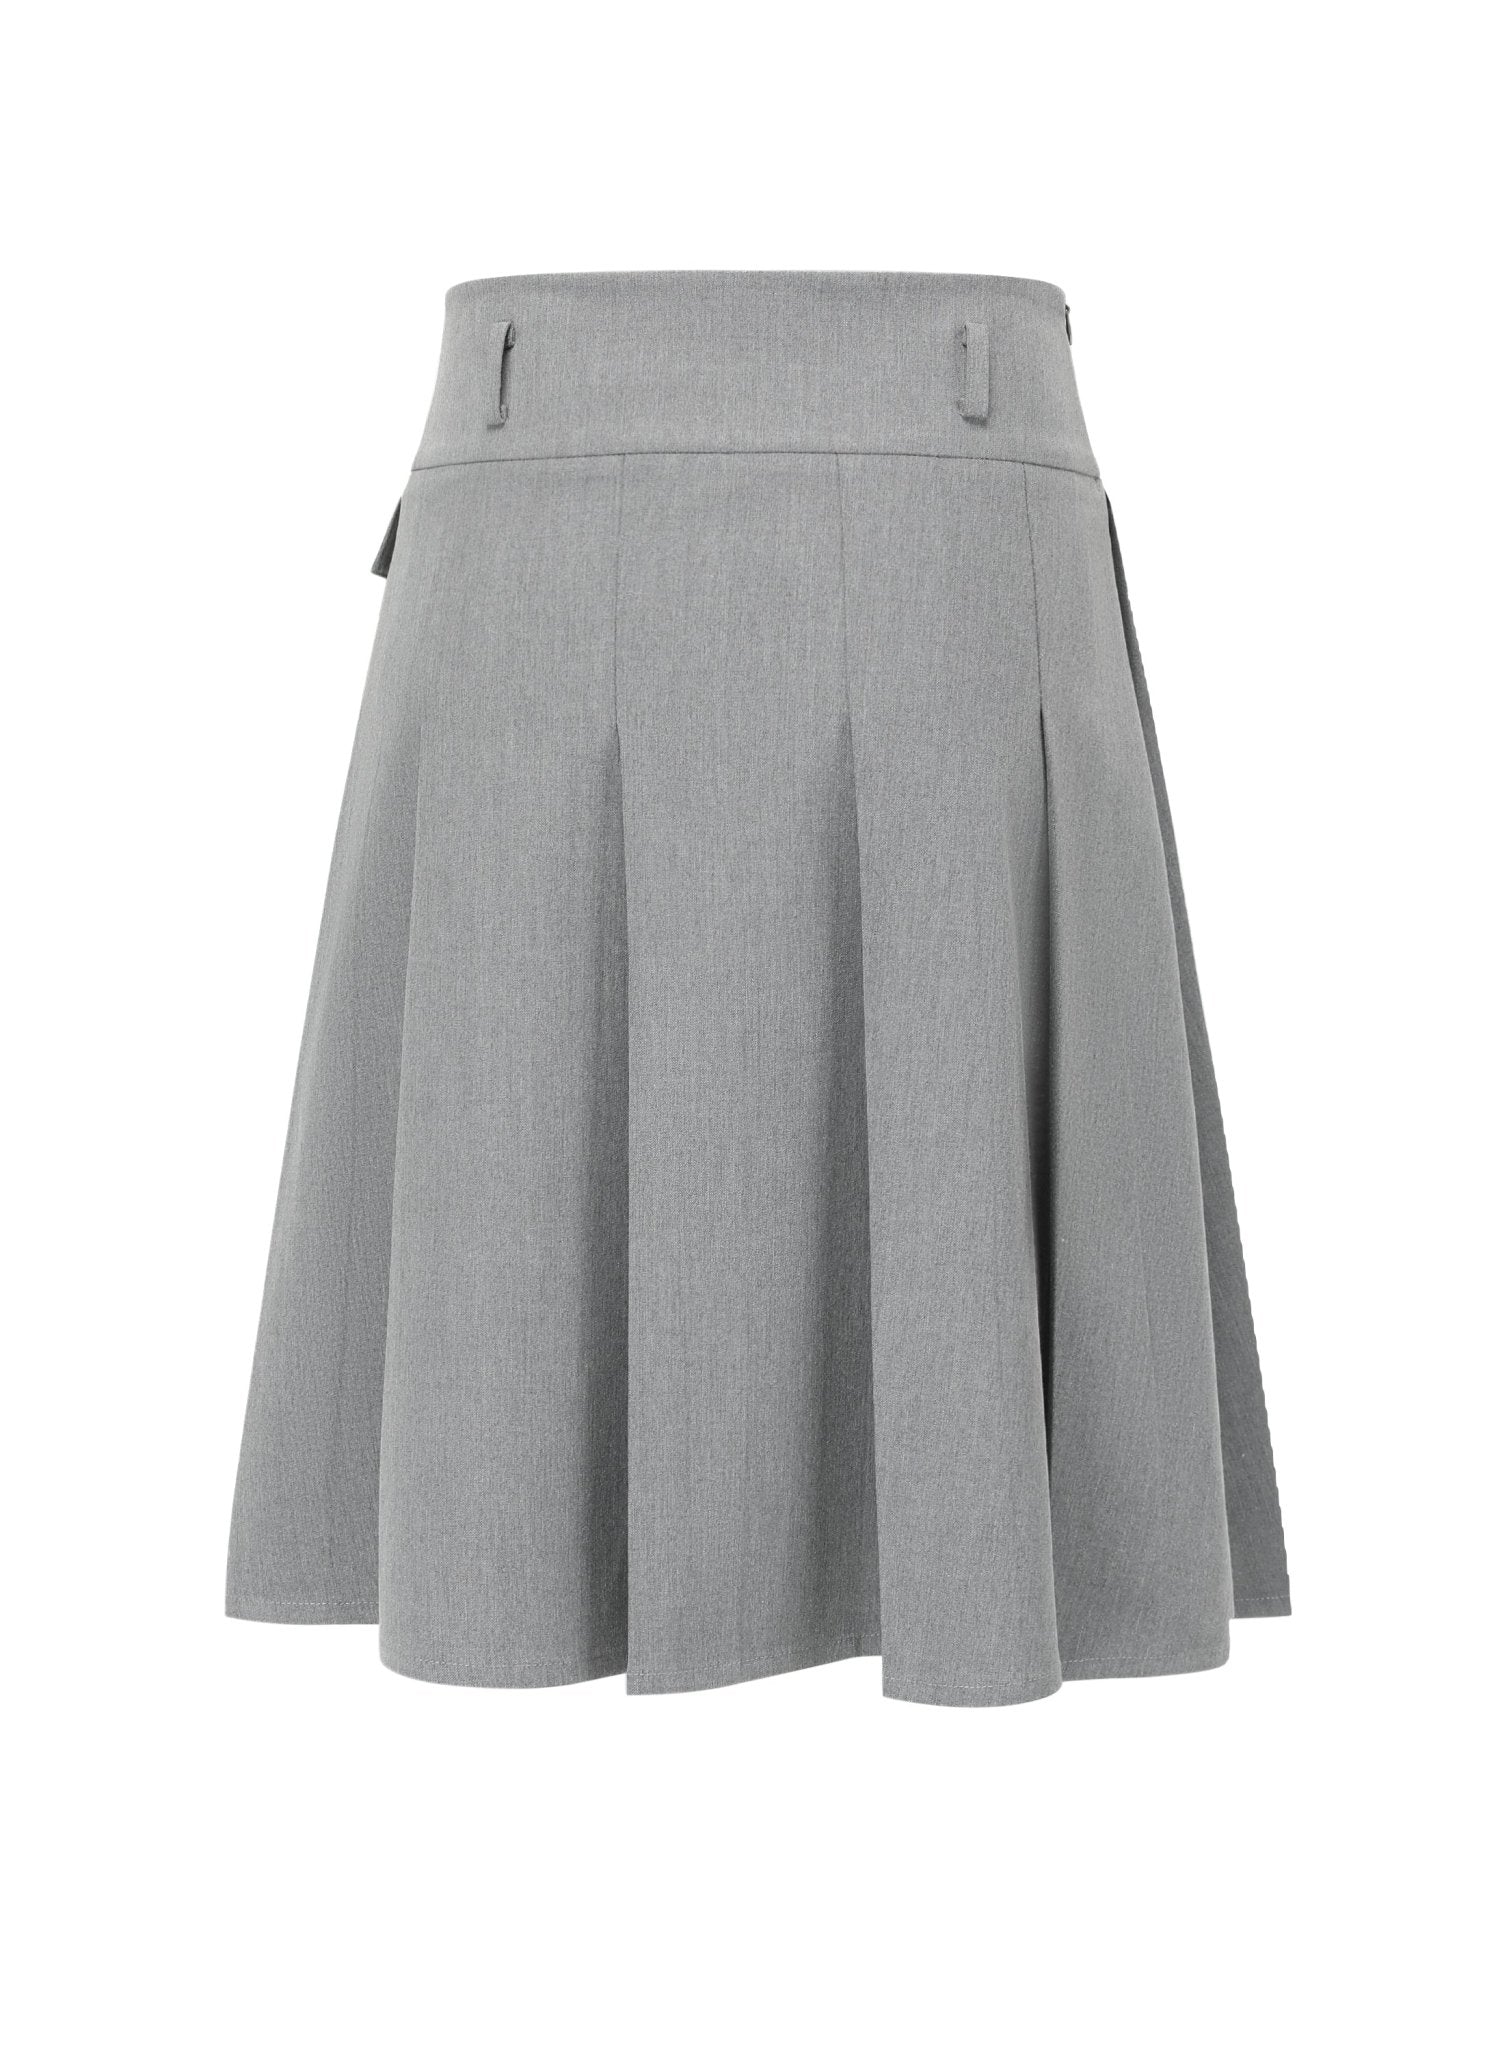 Alexia Sandra Grey Pleated Medium Skirt | MADA IN CHINA